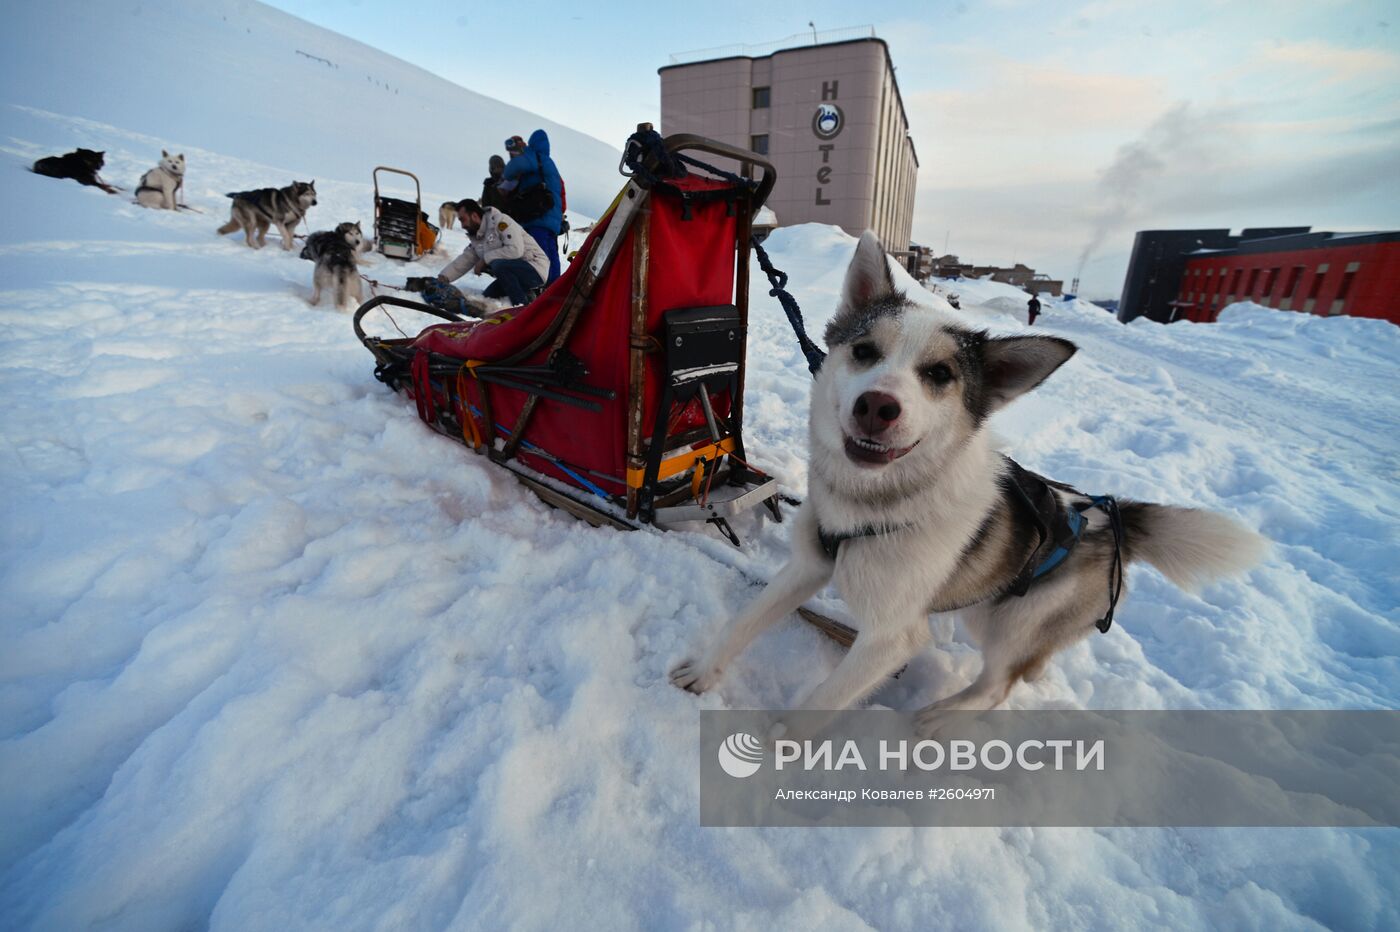 Высокоширотная полярная экспедиция на Шпицберген в рамках проекта "Арктика – 2015"